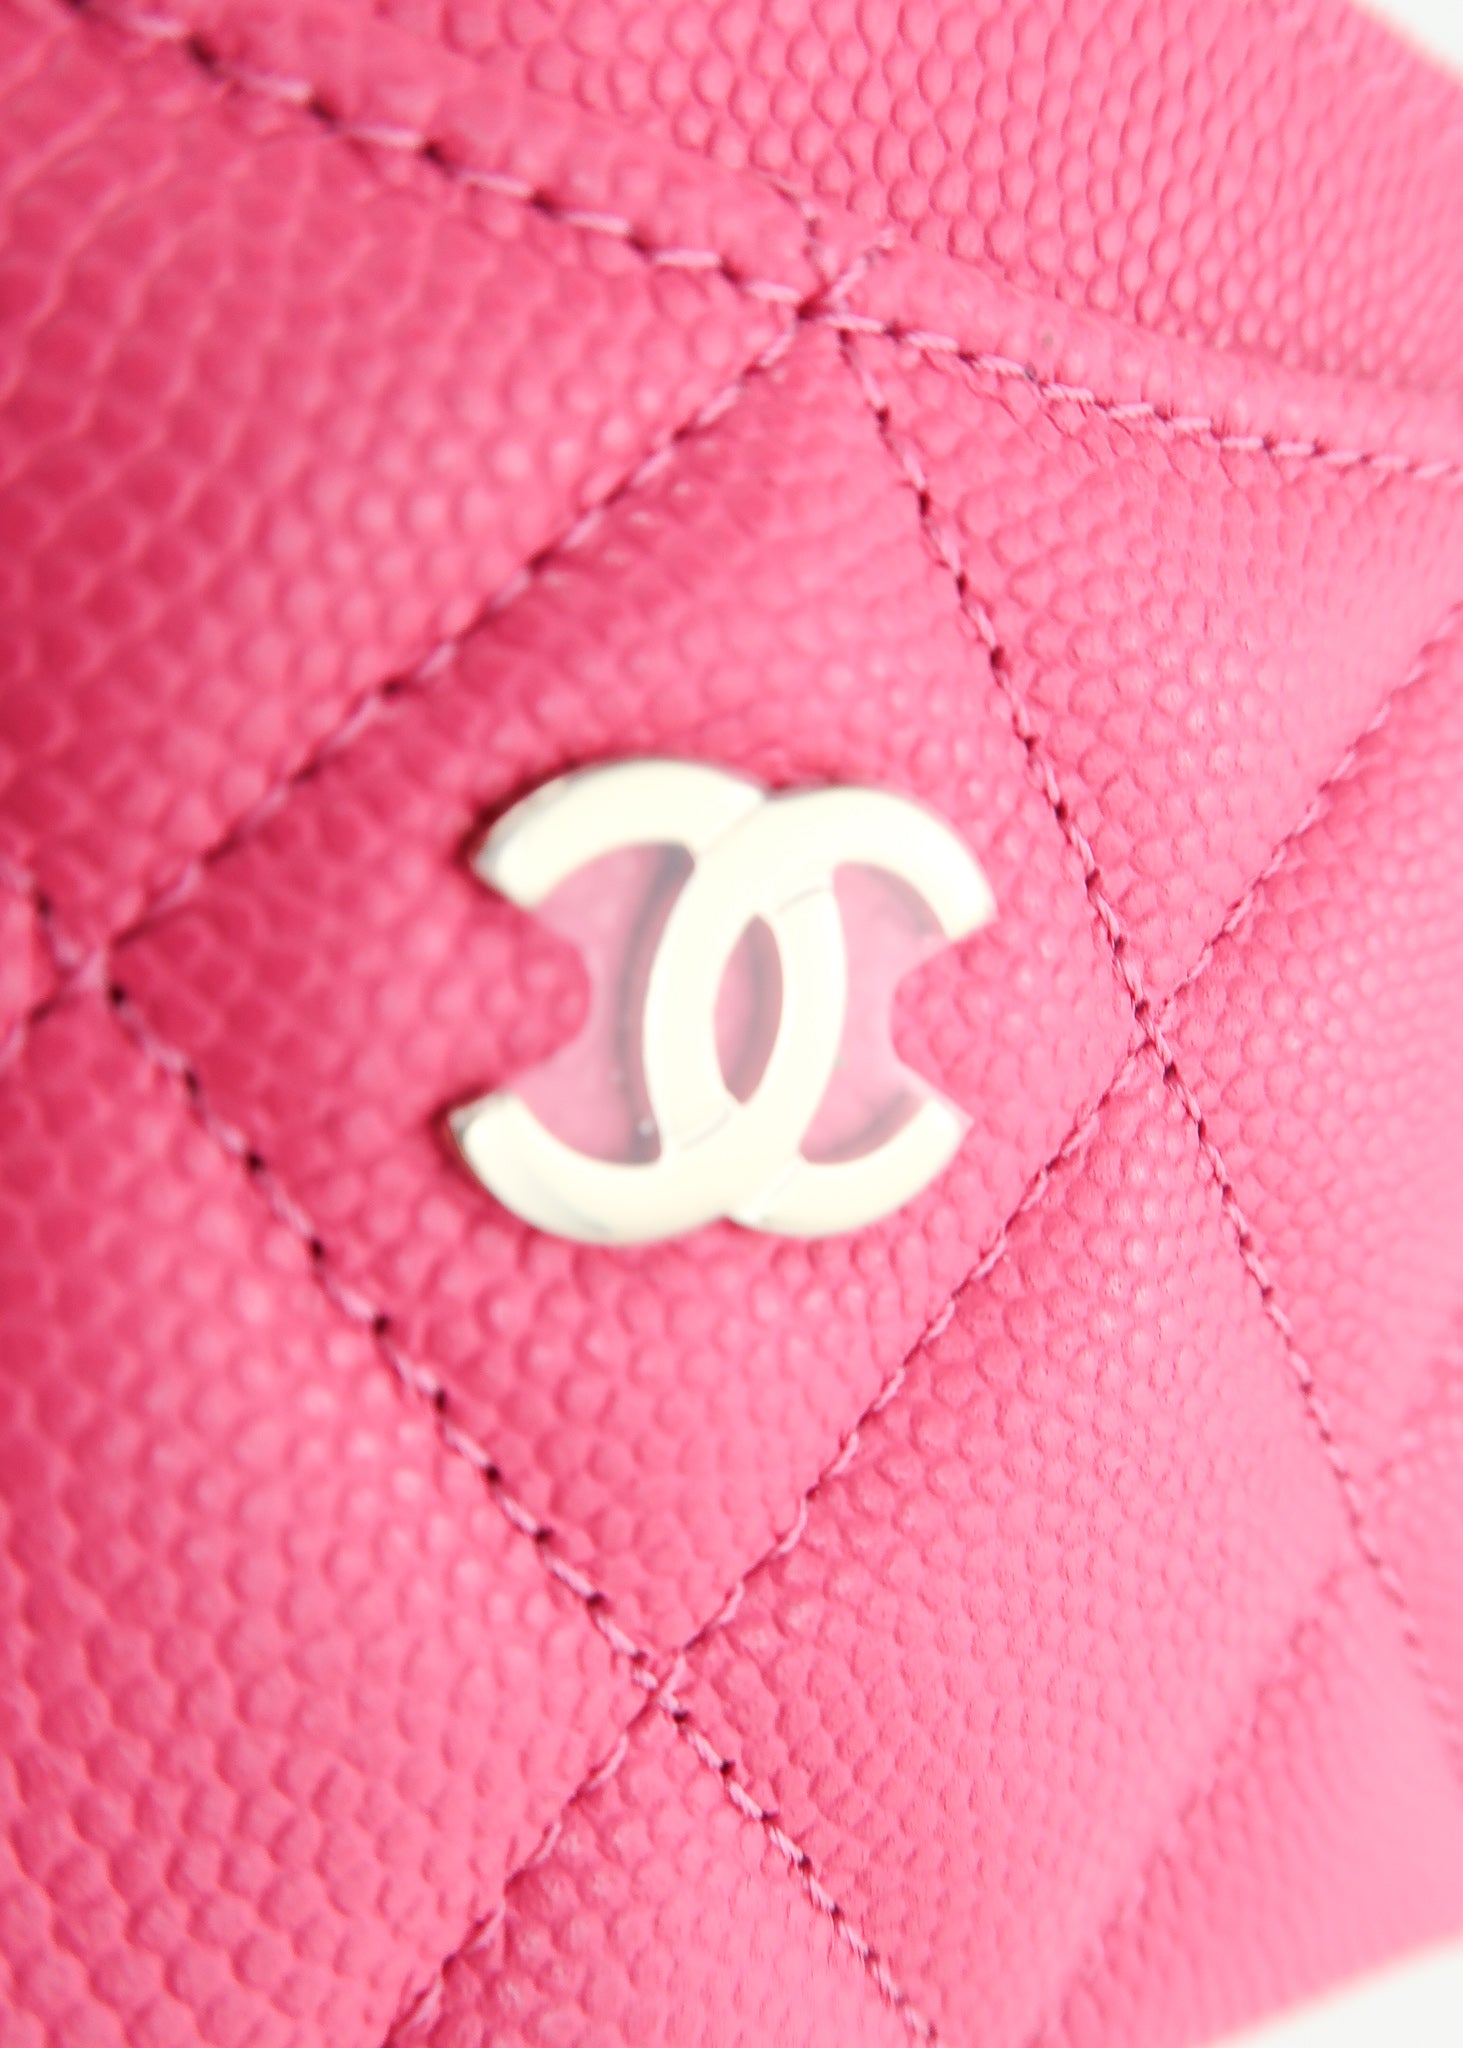 Chanel 19 Card Holder Dark Pink – DAC